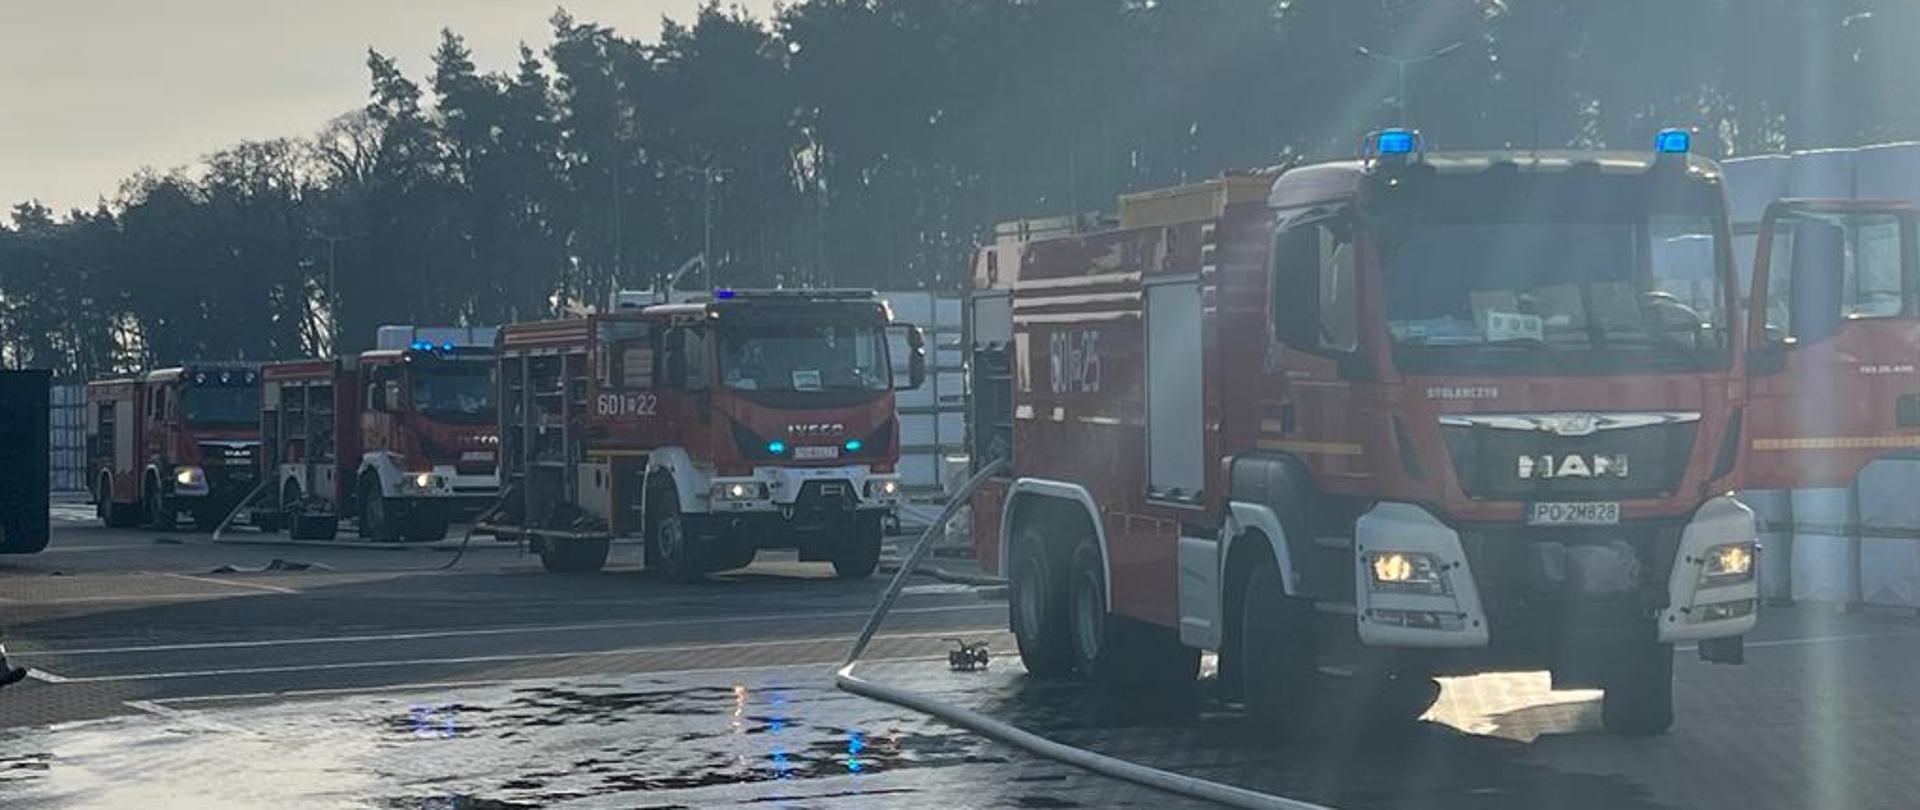 Na zdjęciu 4 czerwone samochody strażackie na włączonych sygnałach świetlnych niebieskich wraz z rozwiniętymi odcinkami pożarniczymi